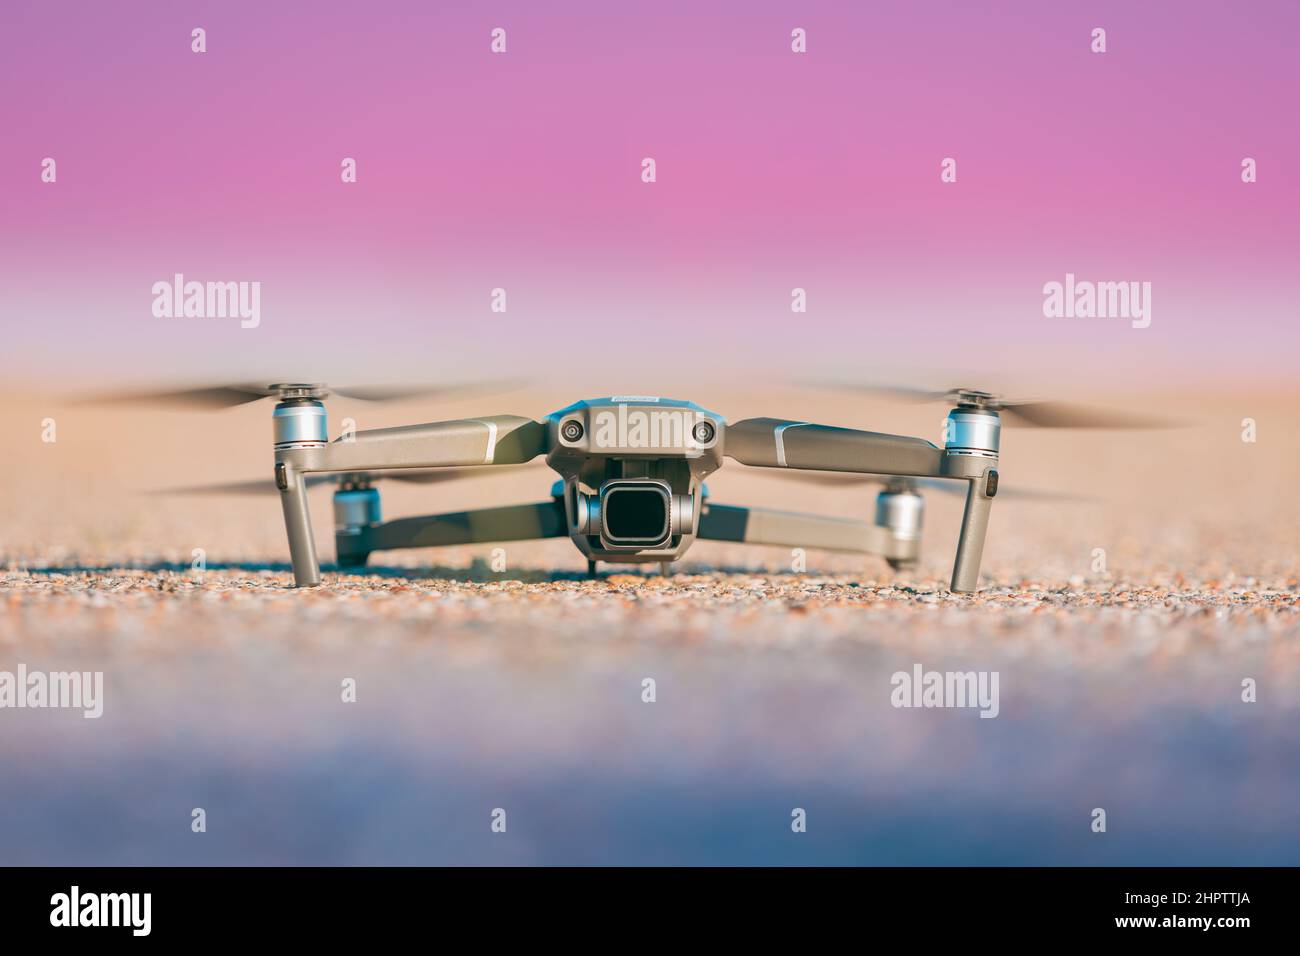 Elektrische Drohne Auf Dem Boden. Elektronisches Gerät Gadget Quadcopter Copter mit Kamera Stockfoto